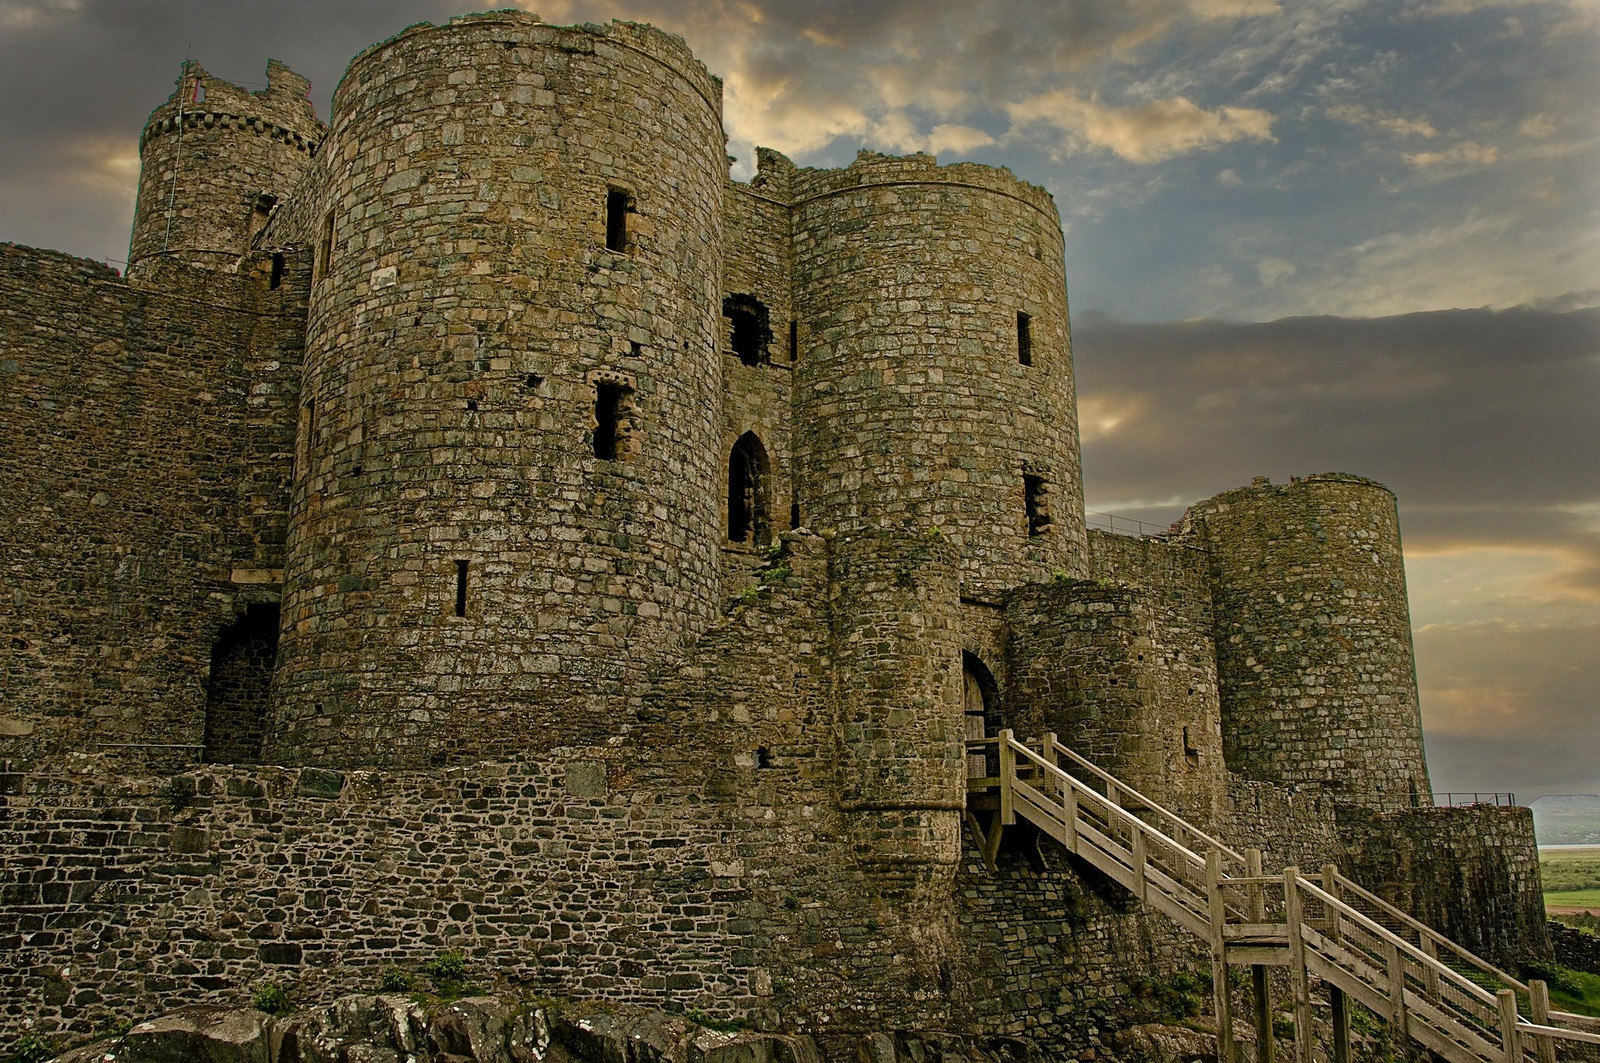 Harlech Castle. Credit Gouldy, flickr